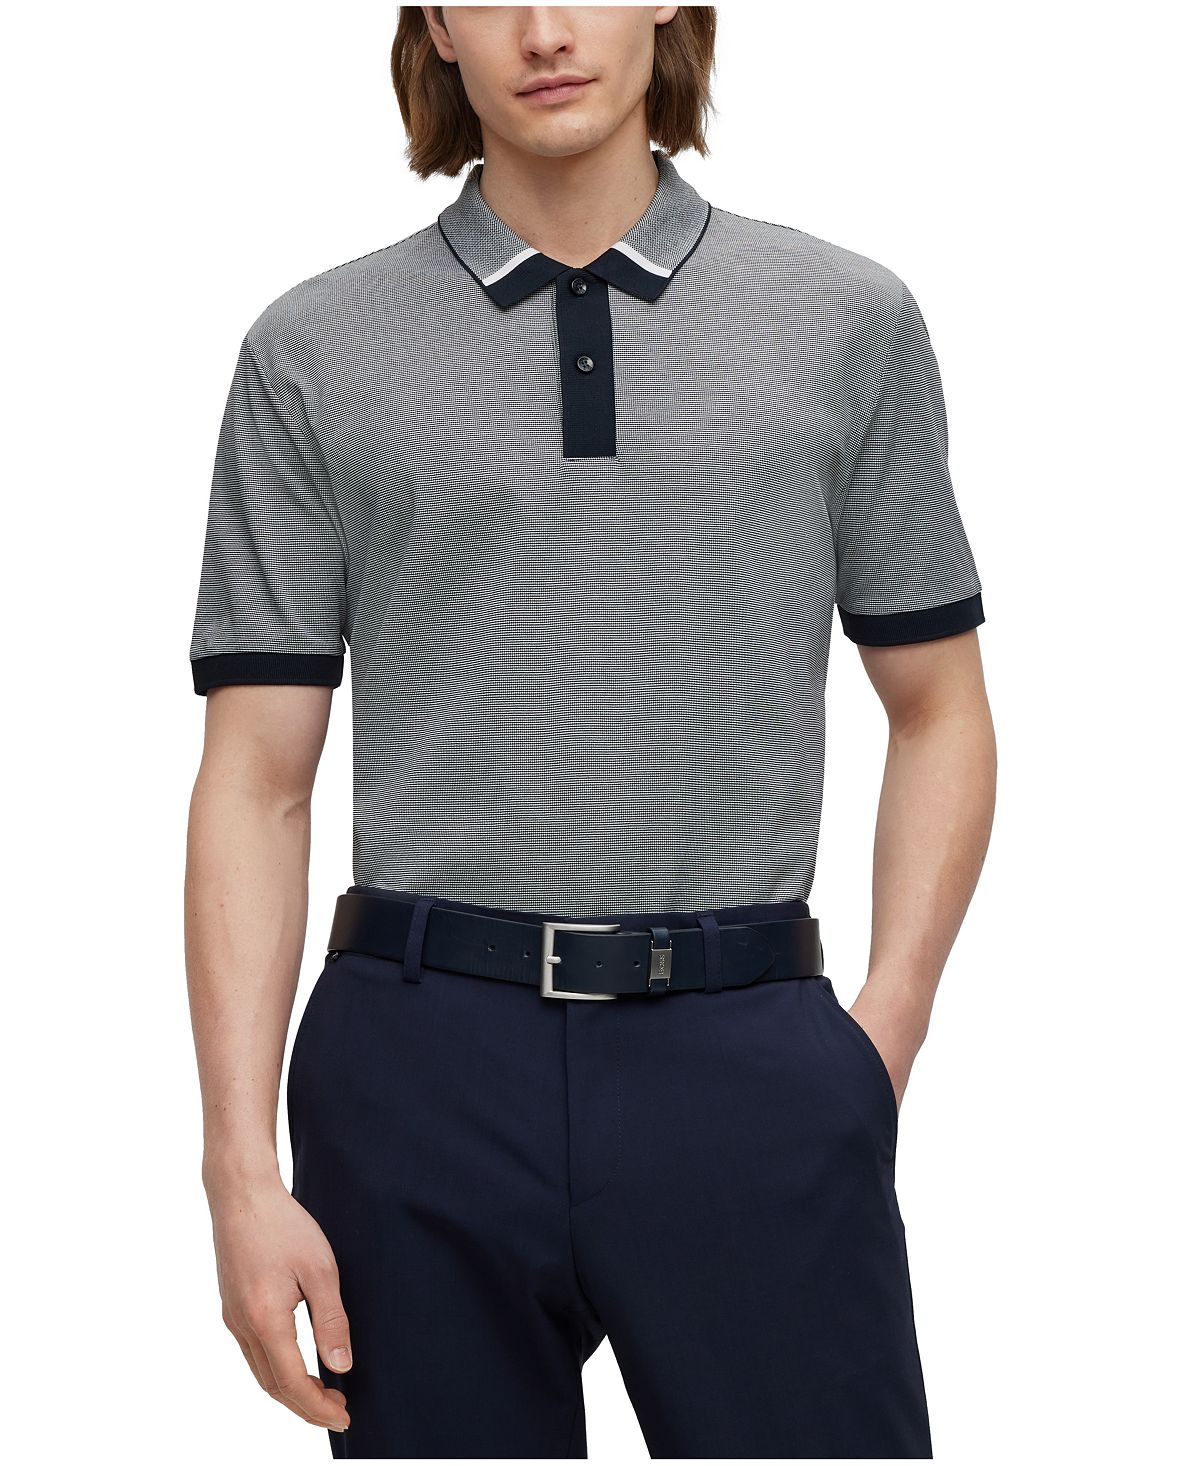 Мужская двухцветная рубашка-поло стандартного кроя Hugo Boss рубашка стандартного кроя из чистого хлопка luca d altieri синий